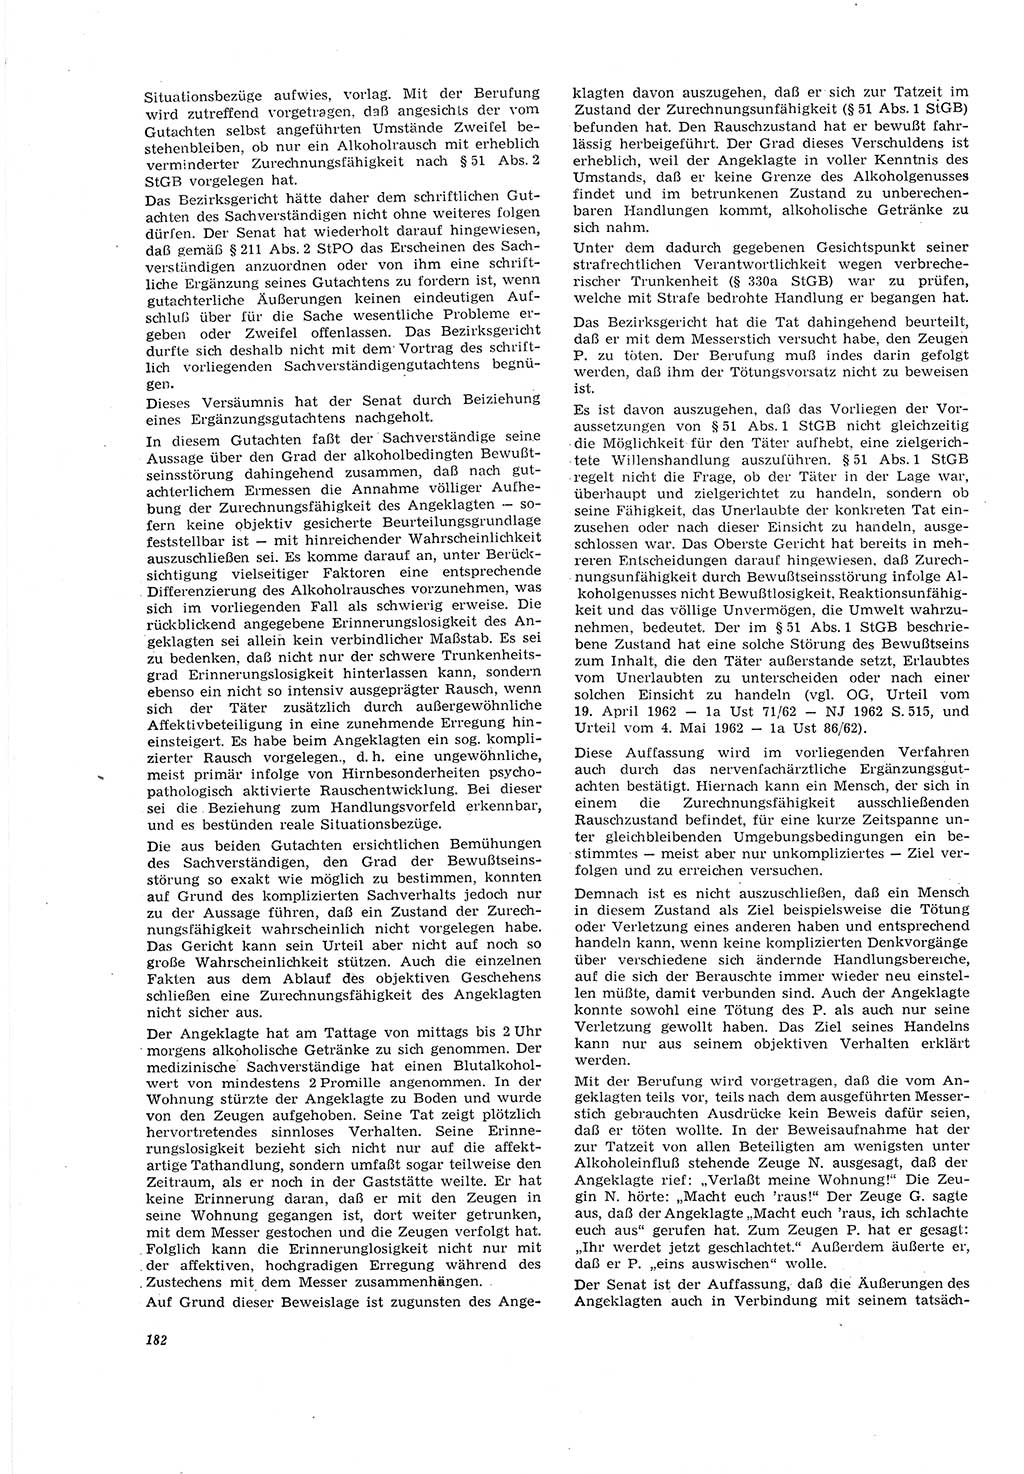 Neue Justiz (NJ), Zeitschrift für Recht und Rechtswissenschaft [Deutsche Demokratische Republik (DDR)], 20. Jahrgang 1966, Seite 182 (NJ DDR 1966, S. 182)